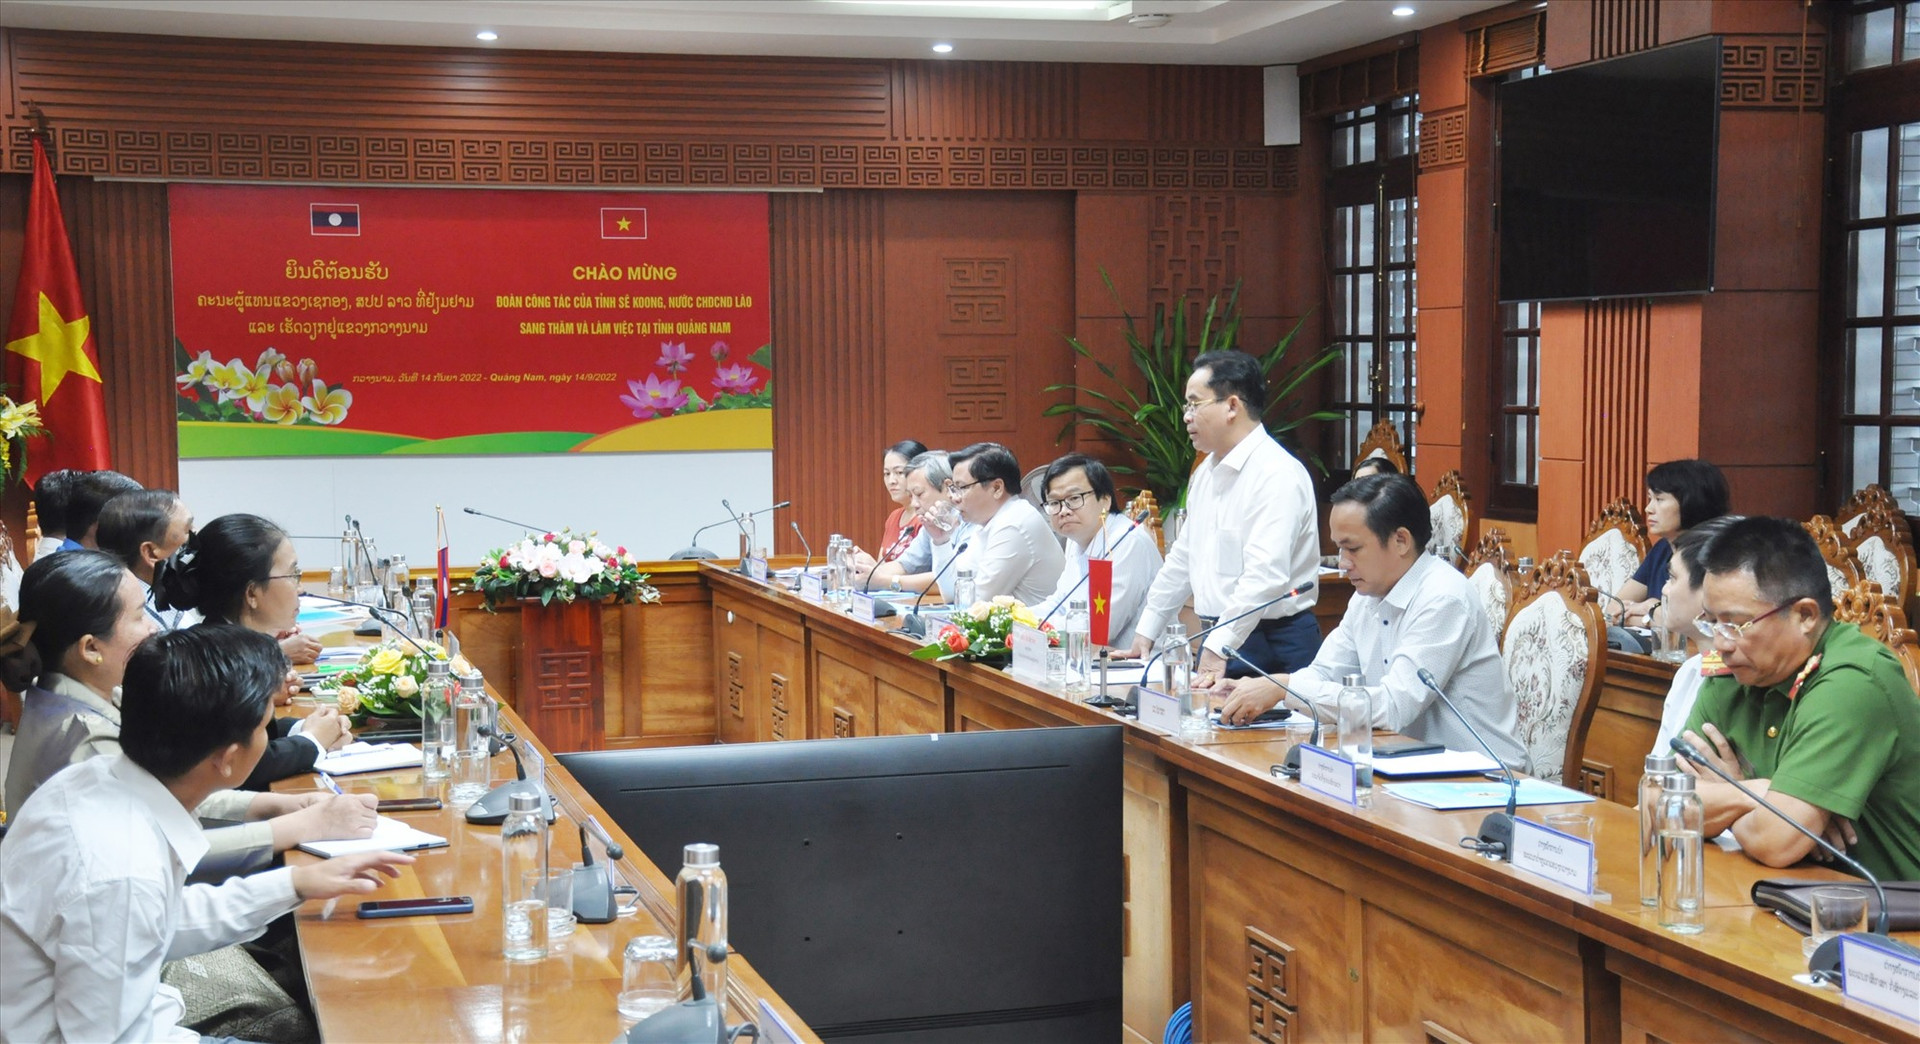 Phó Chủ tịch UBND tỉnh Trần Anh Tuấn chủ trì cuộc làm việc với đoàn đại biểu cấp cao tỉnh Sê Kông chiều 14.9. Ảnh: N.Đ